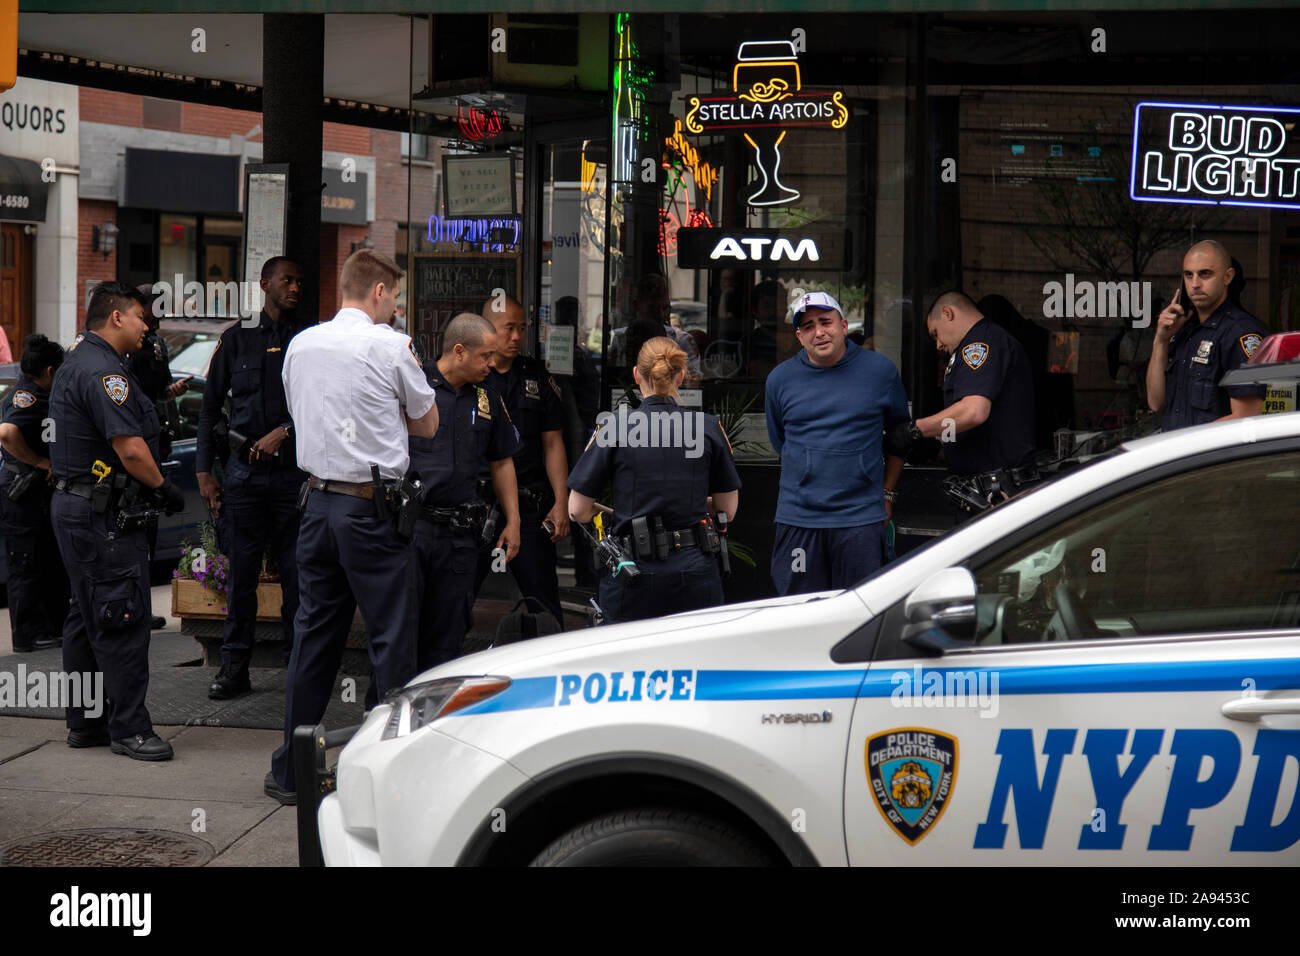 Polizia NYPD effettuare un arresto sulla strada di Nolita, Manhattan, New York. Foto Stock